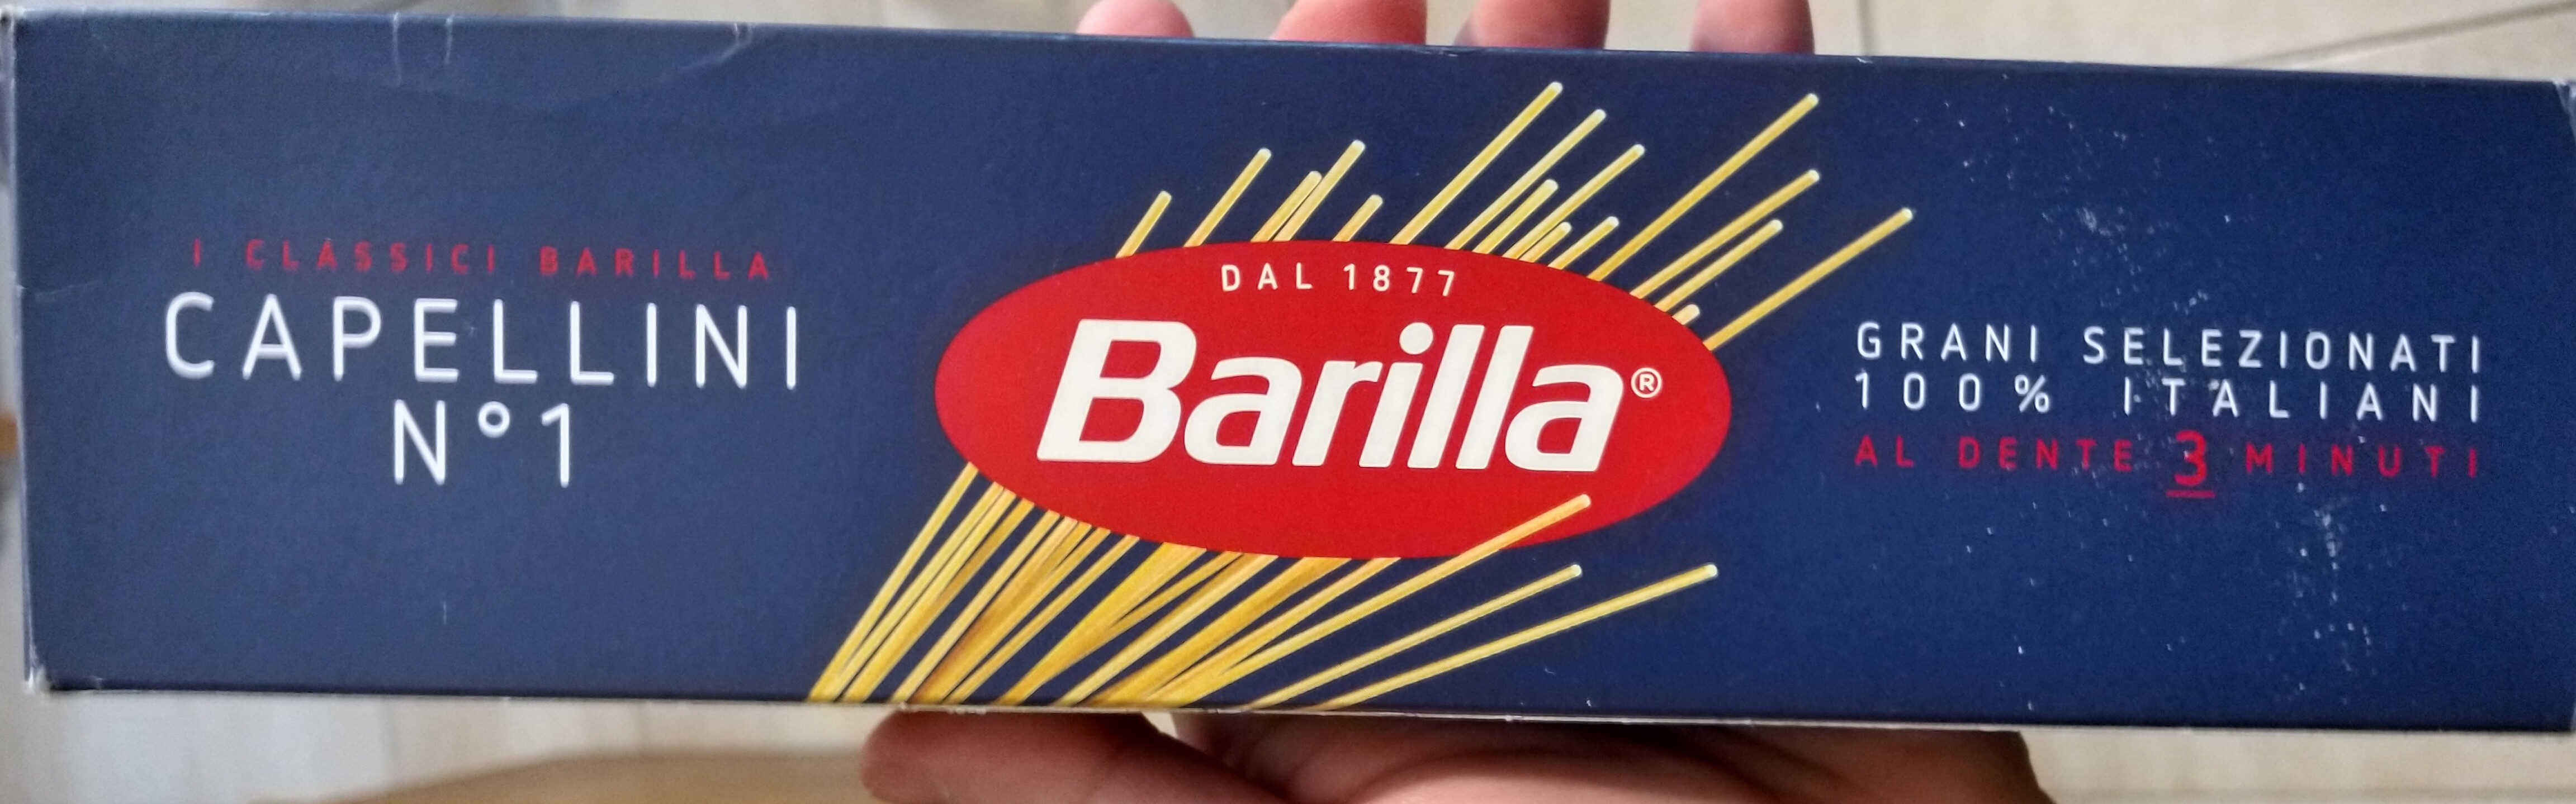 Capellini (Spagetti) Nr. 1 - Product - it